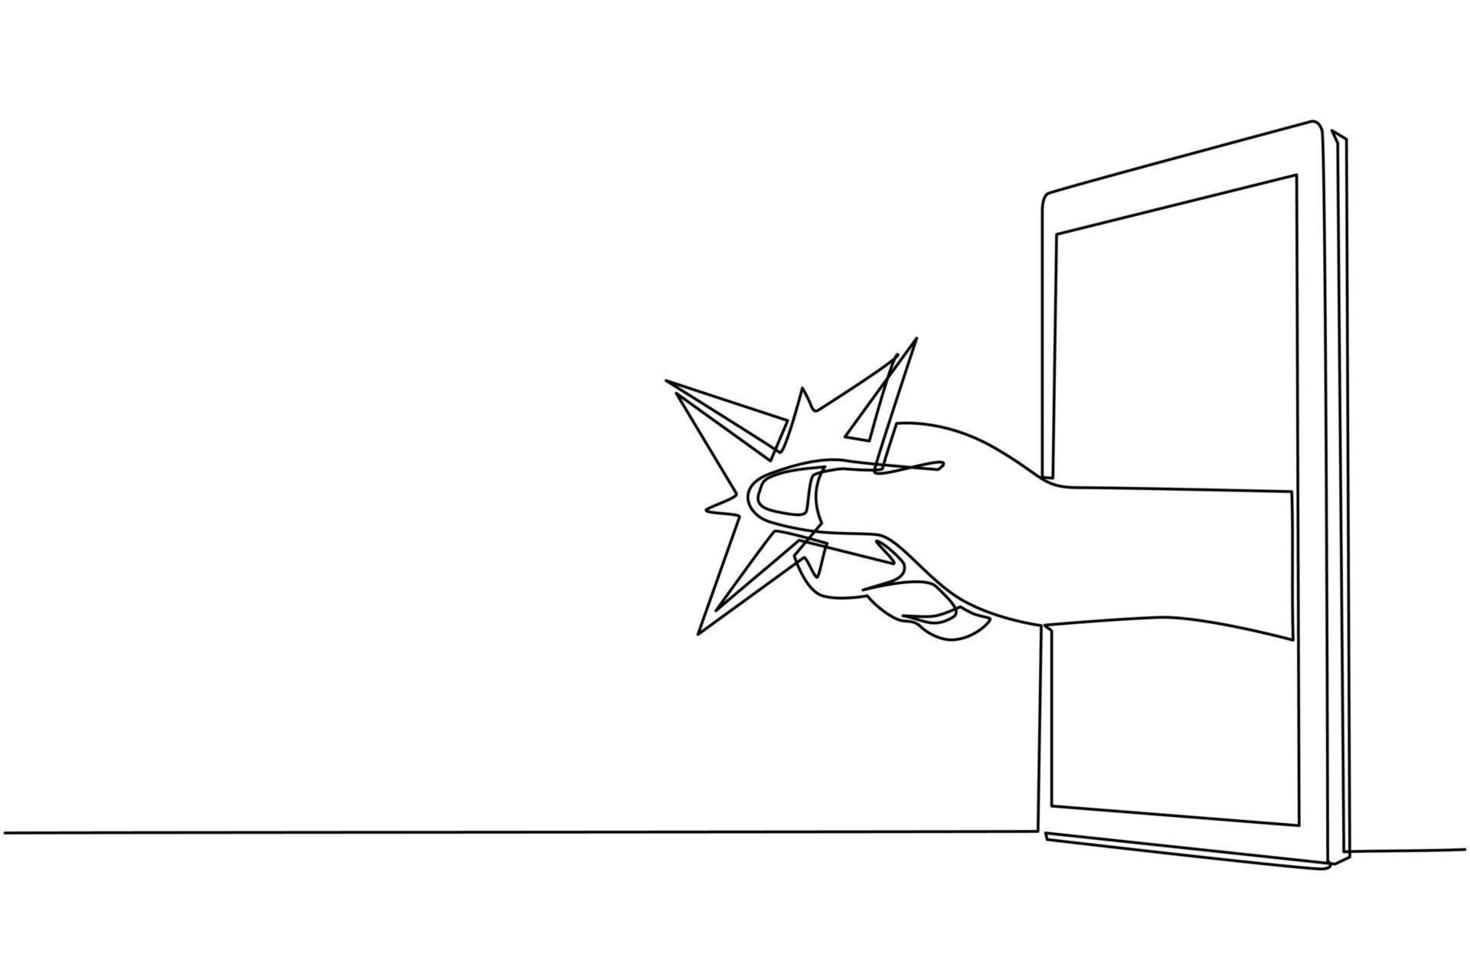 shuriken della lama della tenuta della mano del disegno continuo di una linea tramite il telefono cellulare. concetto di videogiochi ninja, e-sport, applicazione di intrattenimento per smartphone. grafica vettoriale di disegno a linea singola